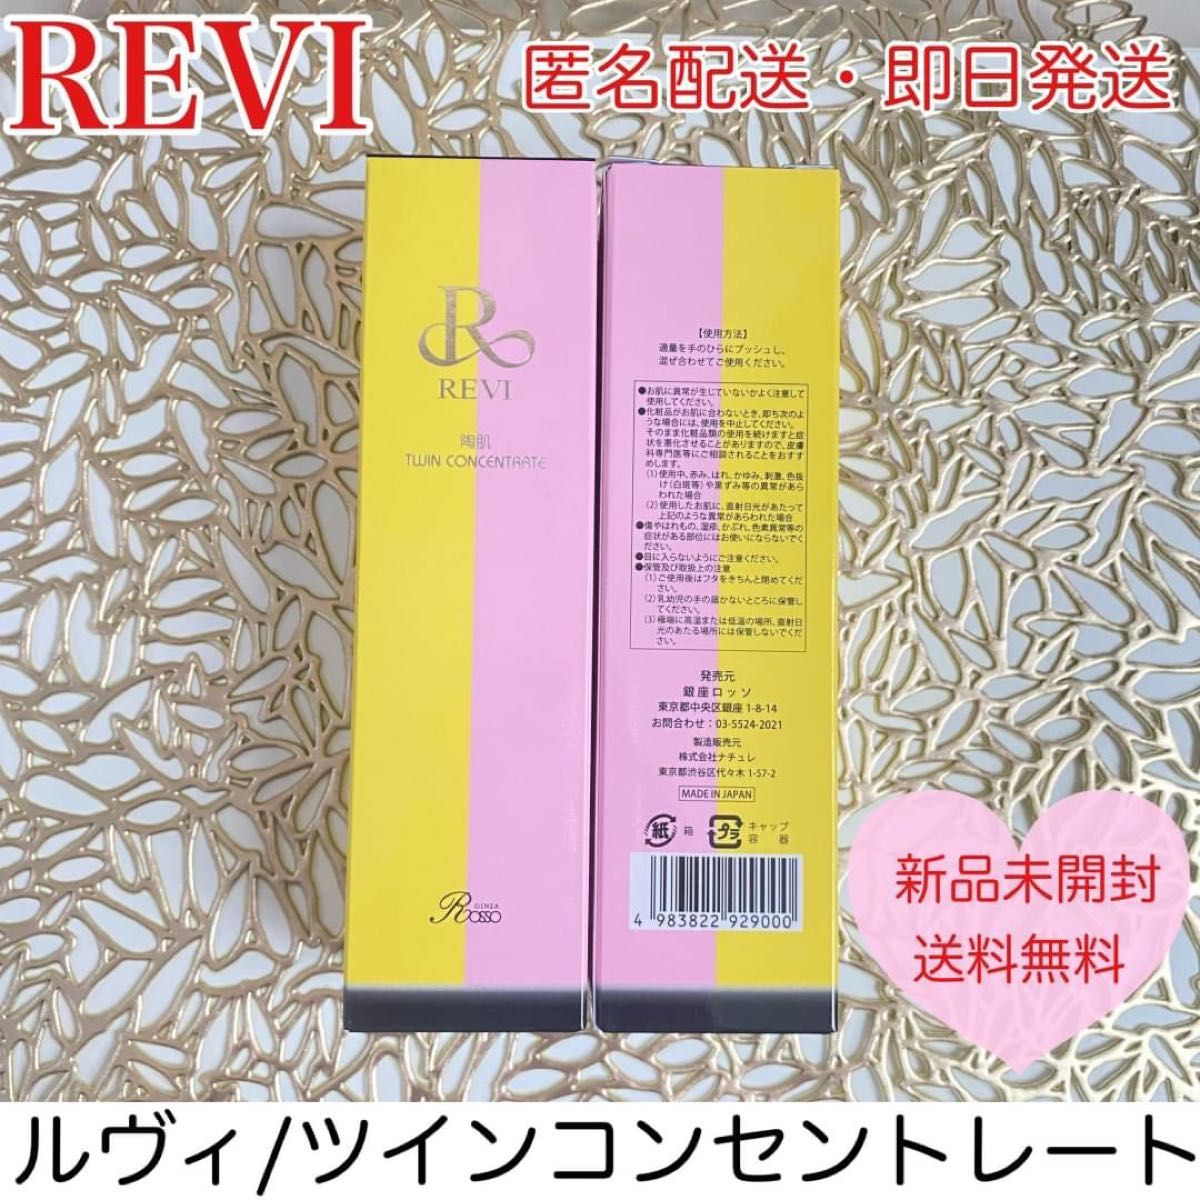 REVI ツインコンセントレート 美容液 針美容 スキンケア 肌ケア 美肌 炭酸